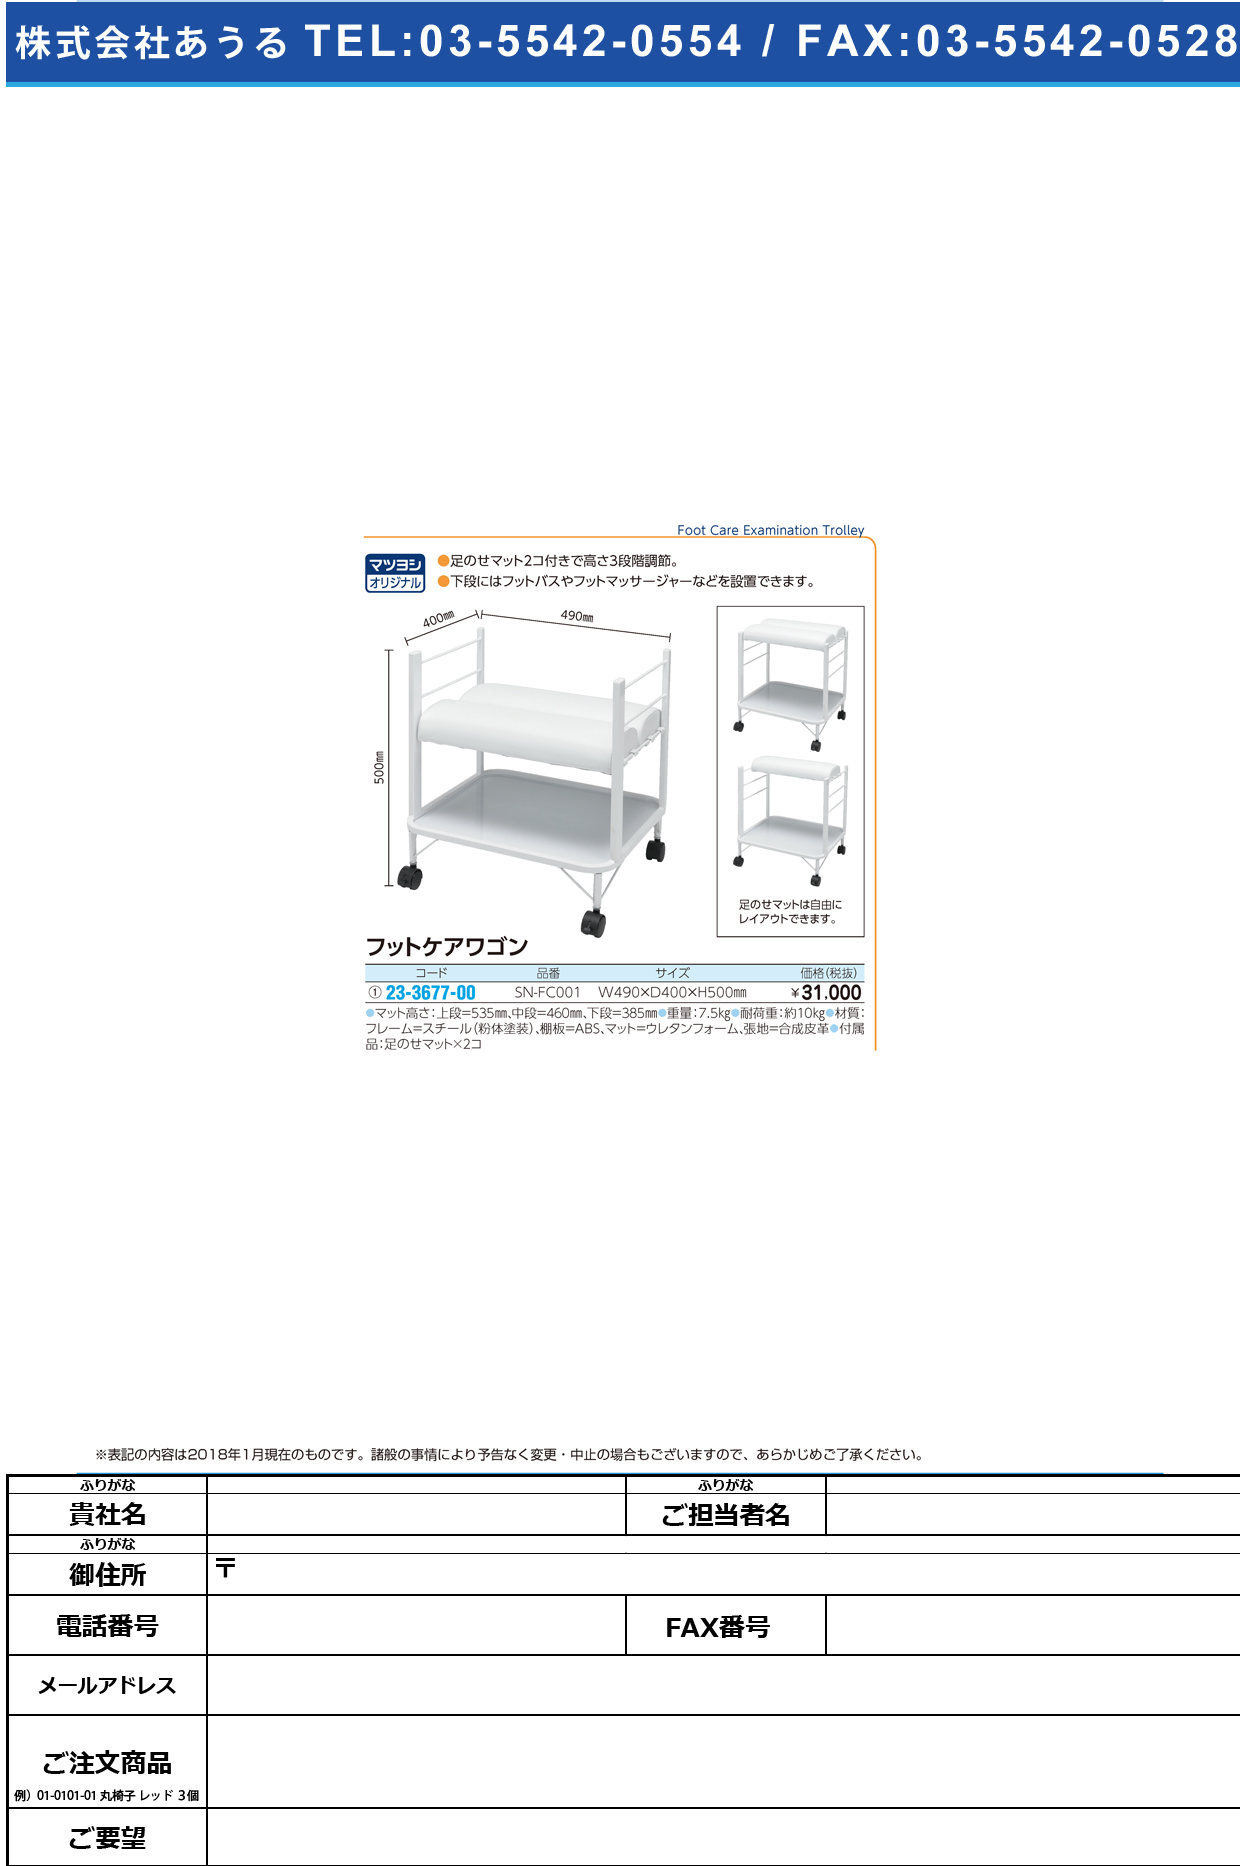 (23-3677-00)フットケア用ワゴン SN-FC001(ﾎﾜｲﾄ) ﾌｯﾄｹｱﾖｳﾜｺﾞﾝ【1台単位】【2018年カタログ商品】